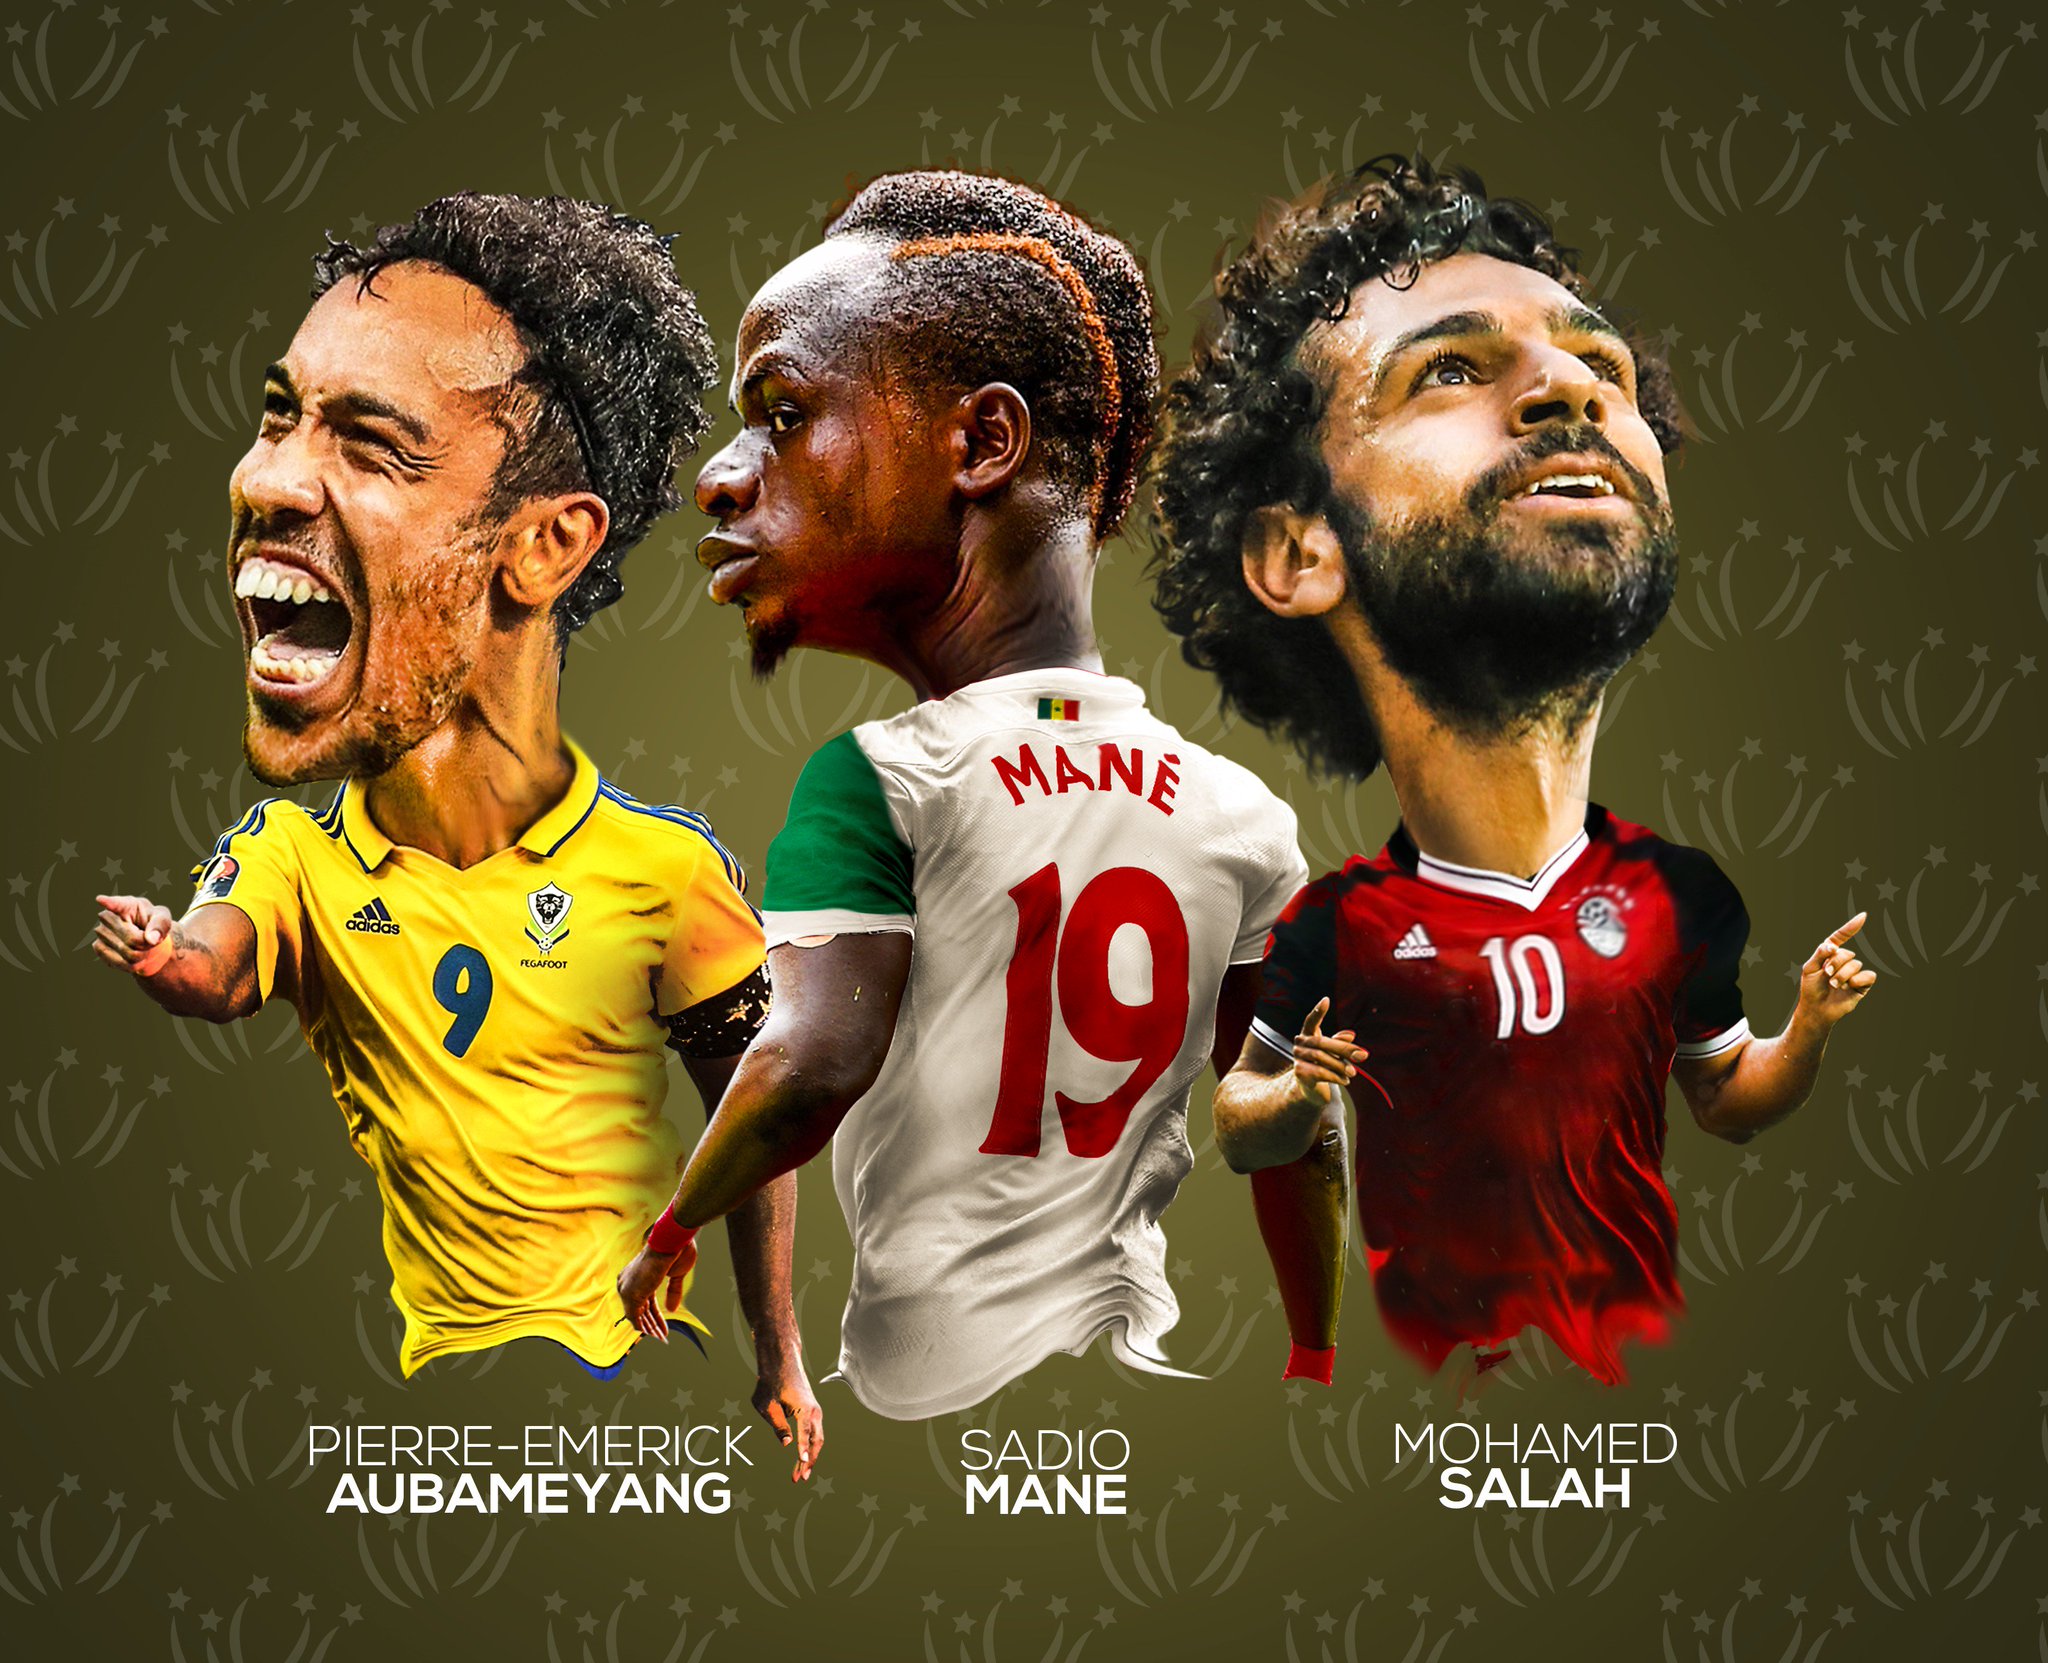 Orgulho africano: Salah, Mané e Aubameyang fazem história na